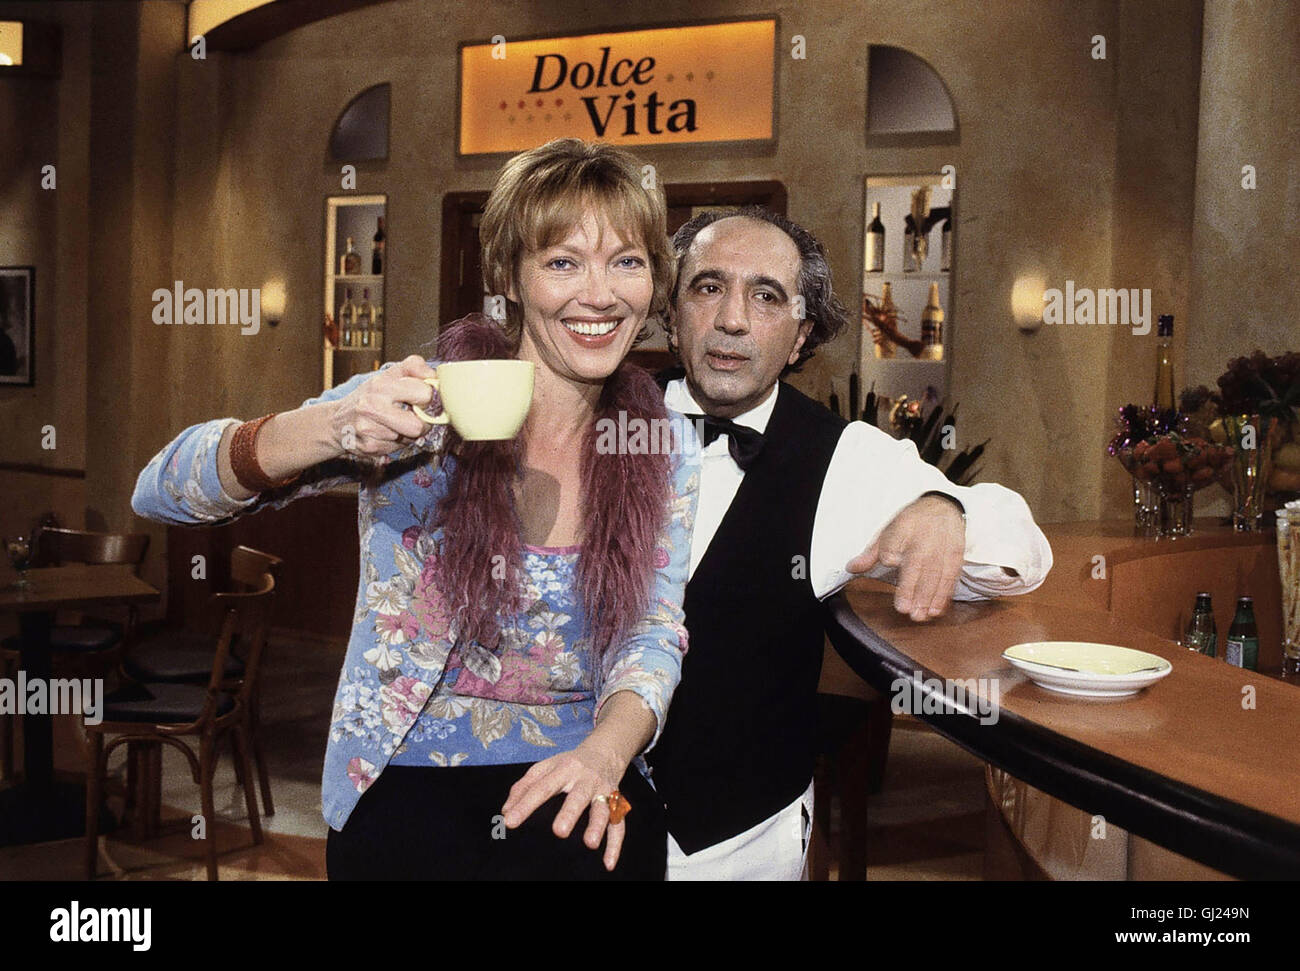 DOLCE VITA- Ein ideales Talk-Pflaster bietet das ZDF mit ihrer Großstadt-Bar im italienischen Stil. Die Stimmung in der Talkshow 'Dolce Vita' soll heiter sein. So will man entspannt plaudern und lästern. Dafür sorgt die sympathische Gastgeberin LUZIA BRAUN und der Barmann BRUNO AGOSTINO, wenn es denn heißt: 'Tutto bene - Alles klar, Bruno?' - 'Si, Signora'  aka. Talk mit Luzia Braun Stock Photo